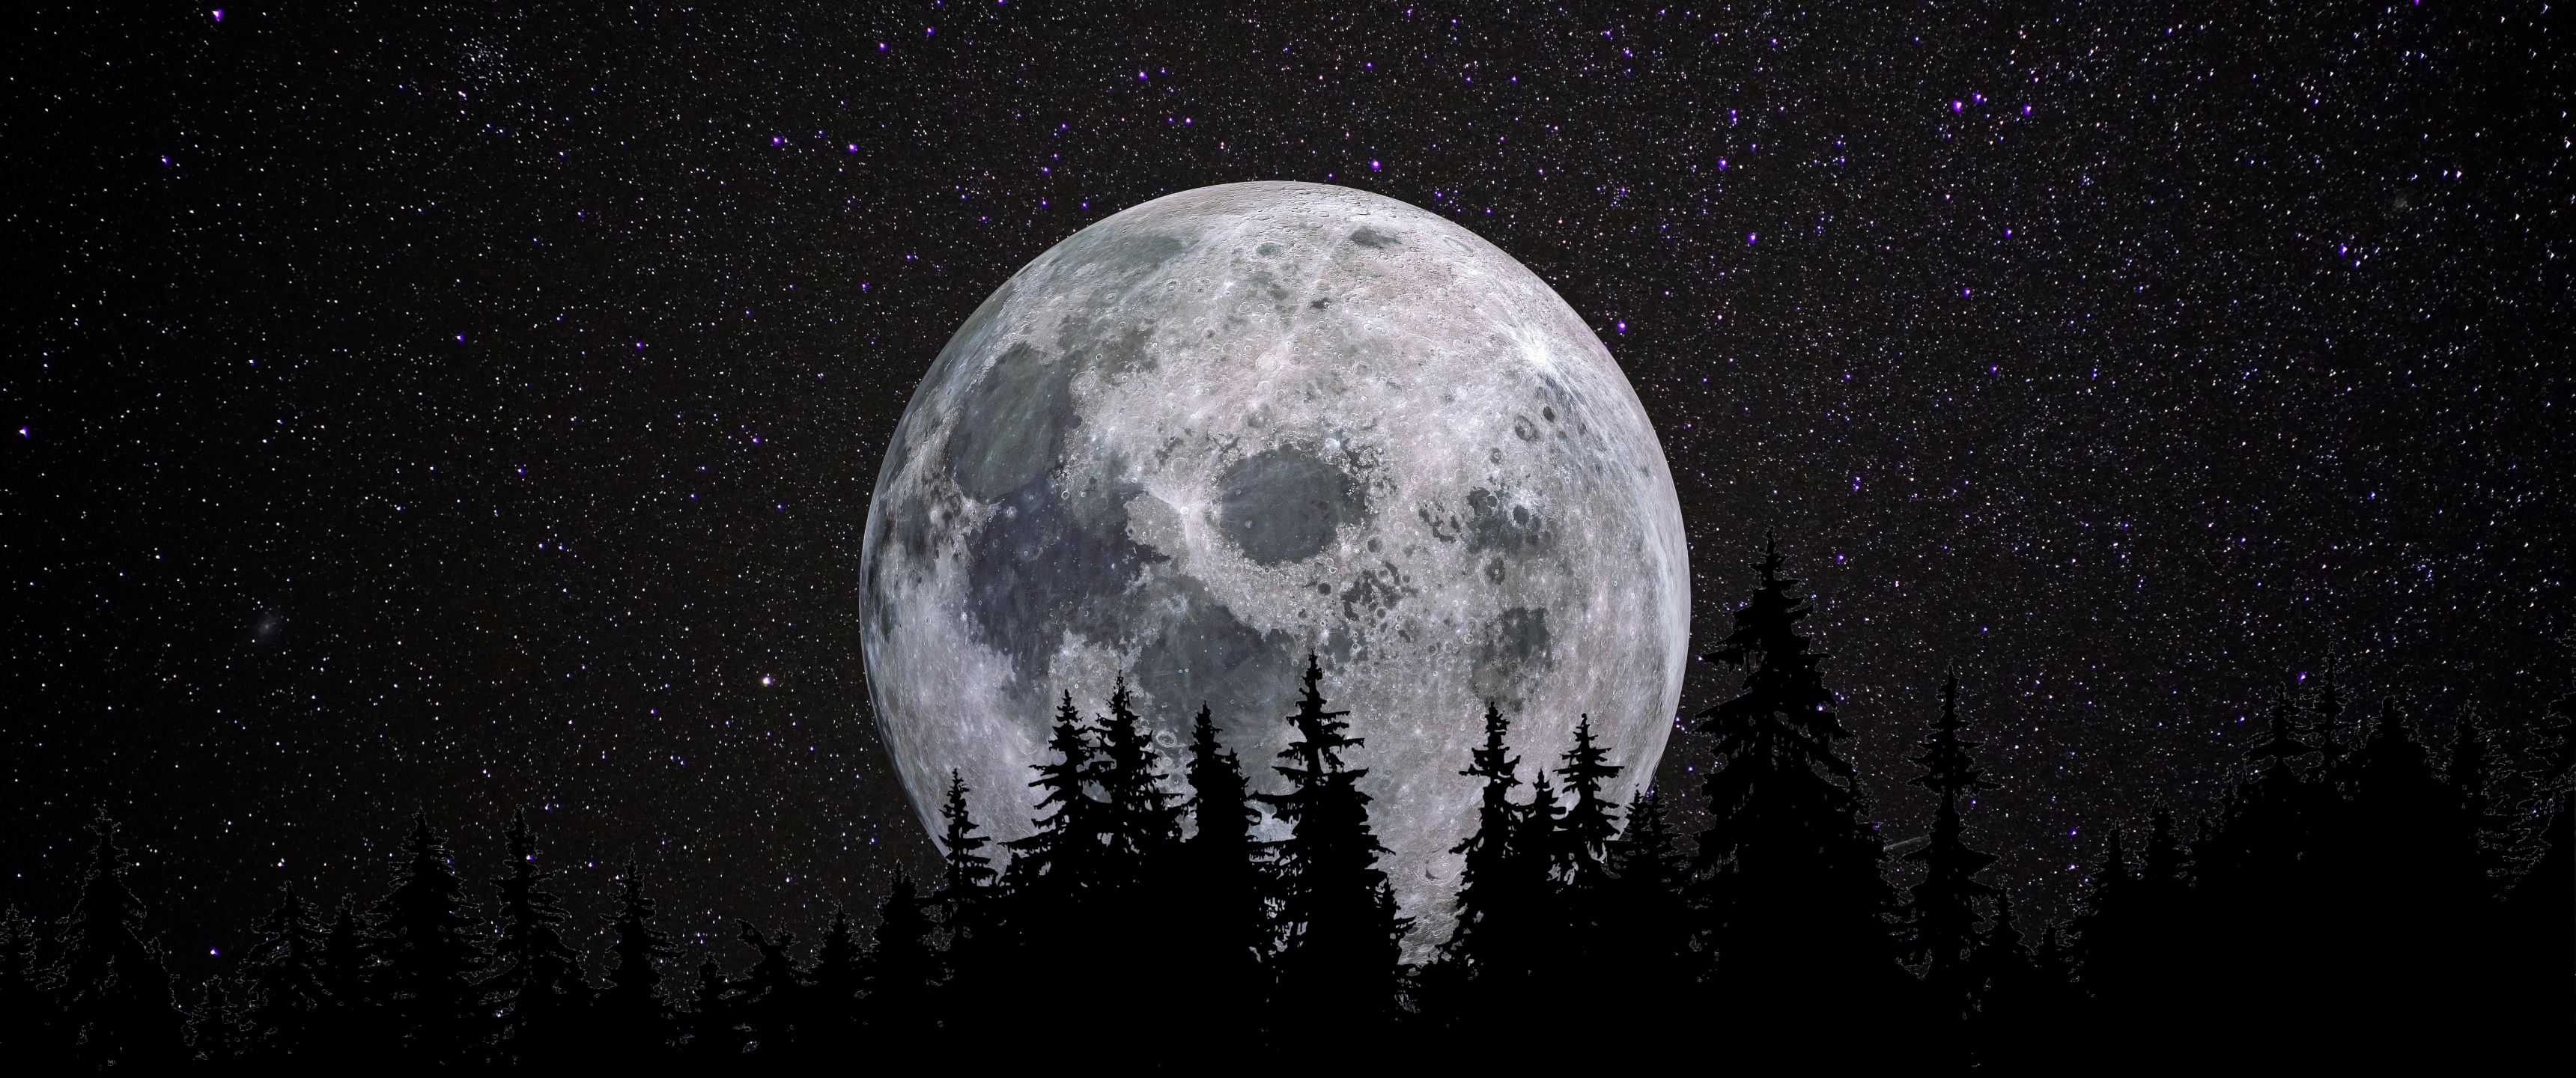 Những đêm trăng đầy đủ là thời điểm tuyệt vời để ngắm nhìn vẻ đẹp hoàn hảo của mặt trăng toả sáng trên bầu trời. Hãy cùng chiêm ngưỡng hình ảnh đầy sức mạnh và sự trầm mặc này ở dưới đây.